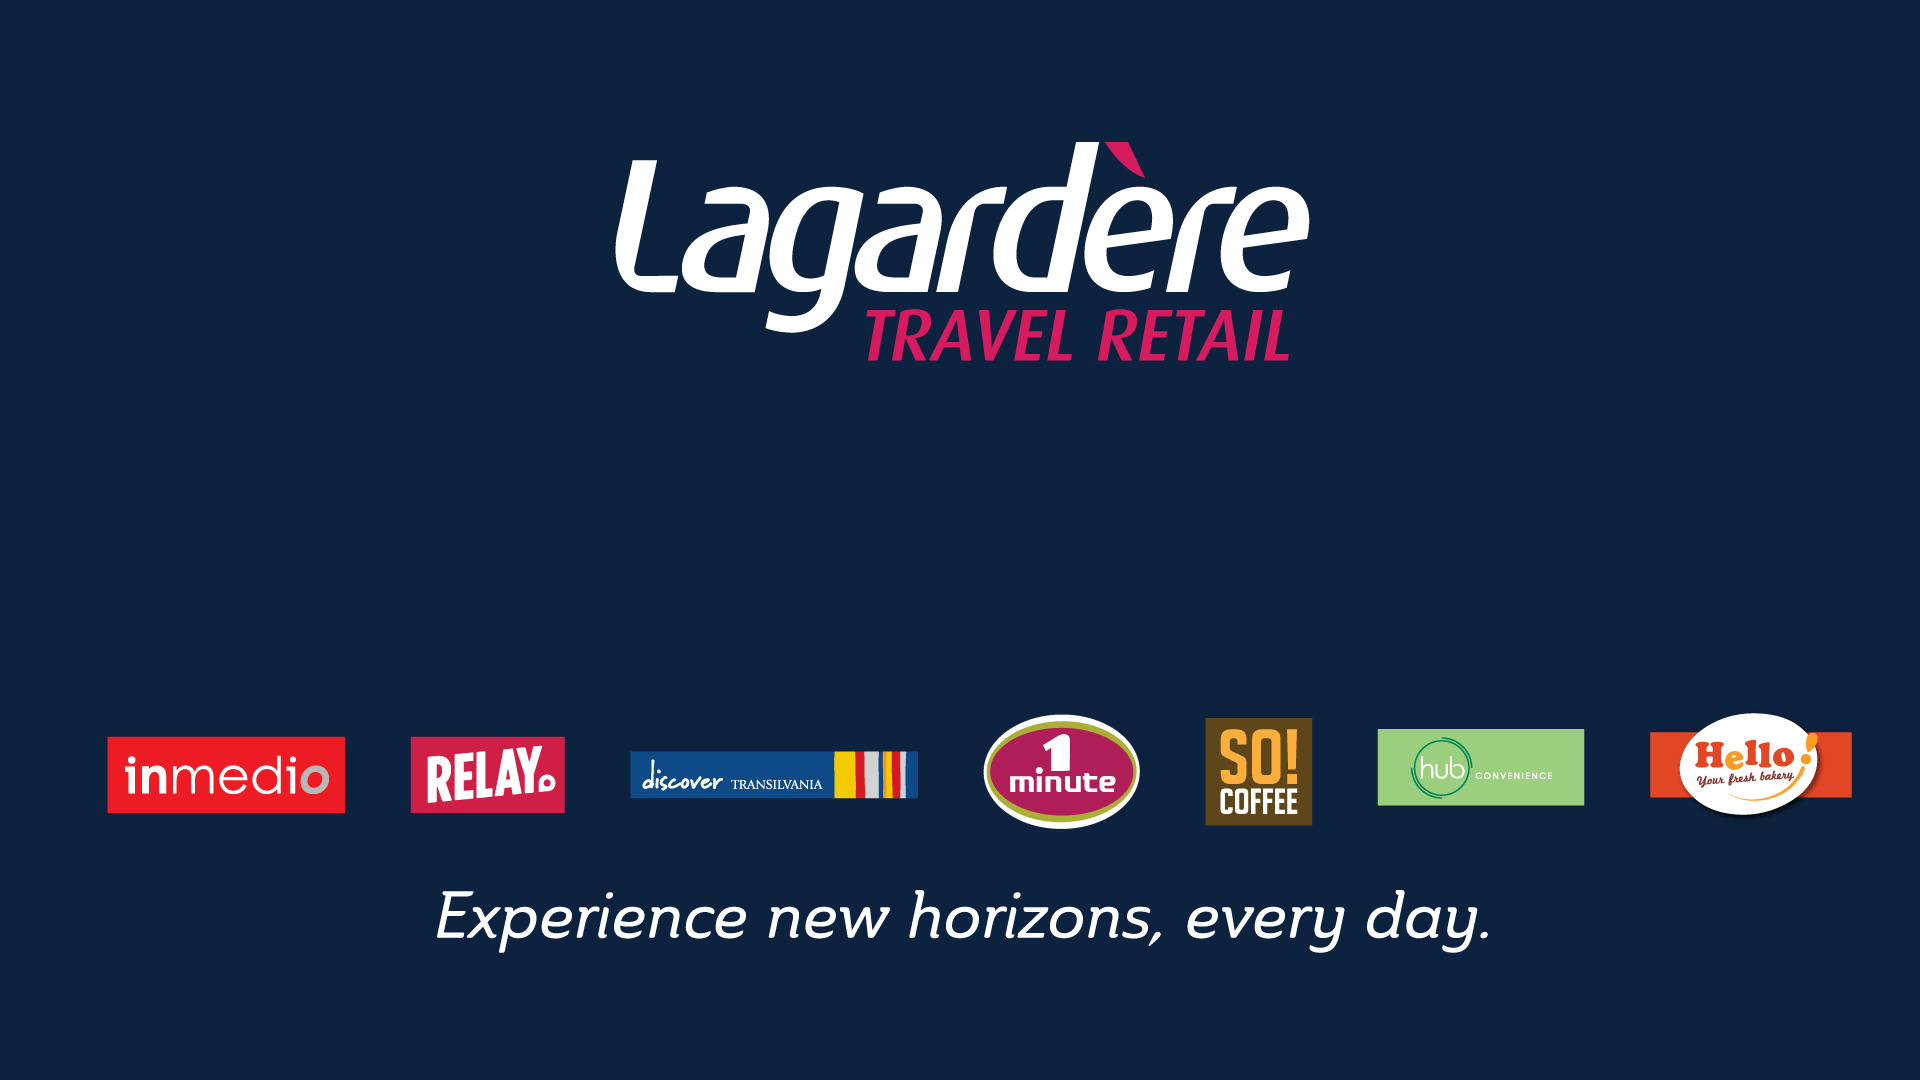 Locuri De Munca Joburi Angajari Lagardere Travel Retail Romania Hipo Ro